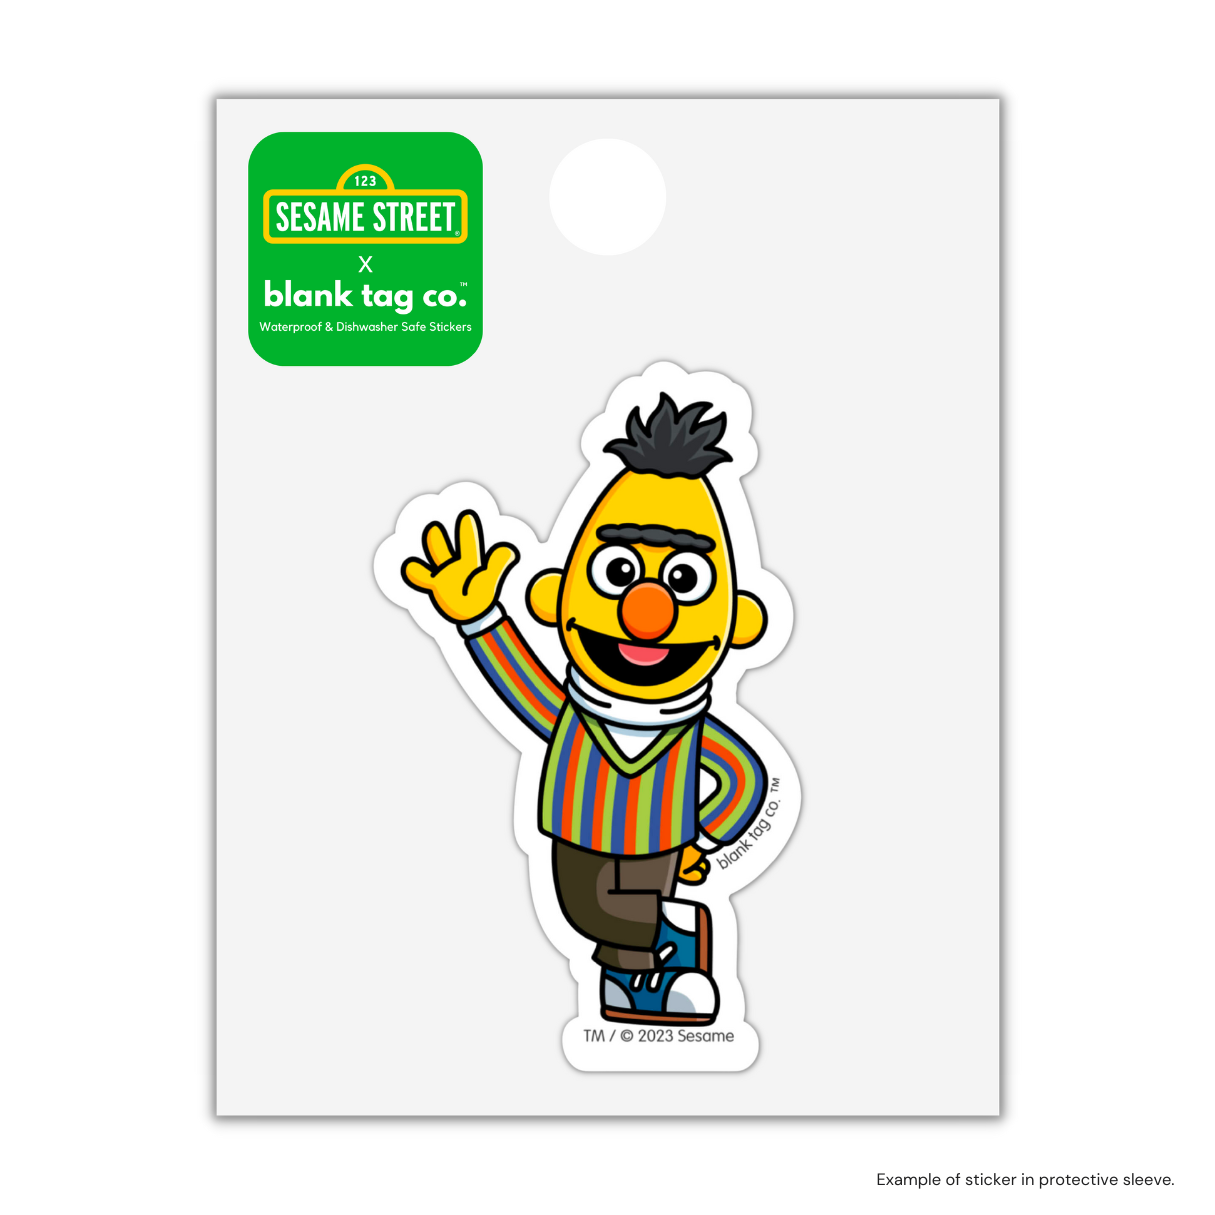 The Bert Sticker